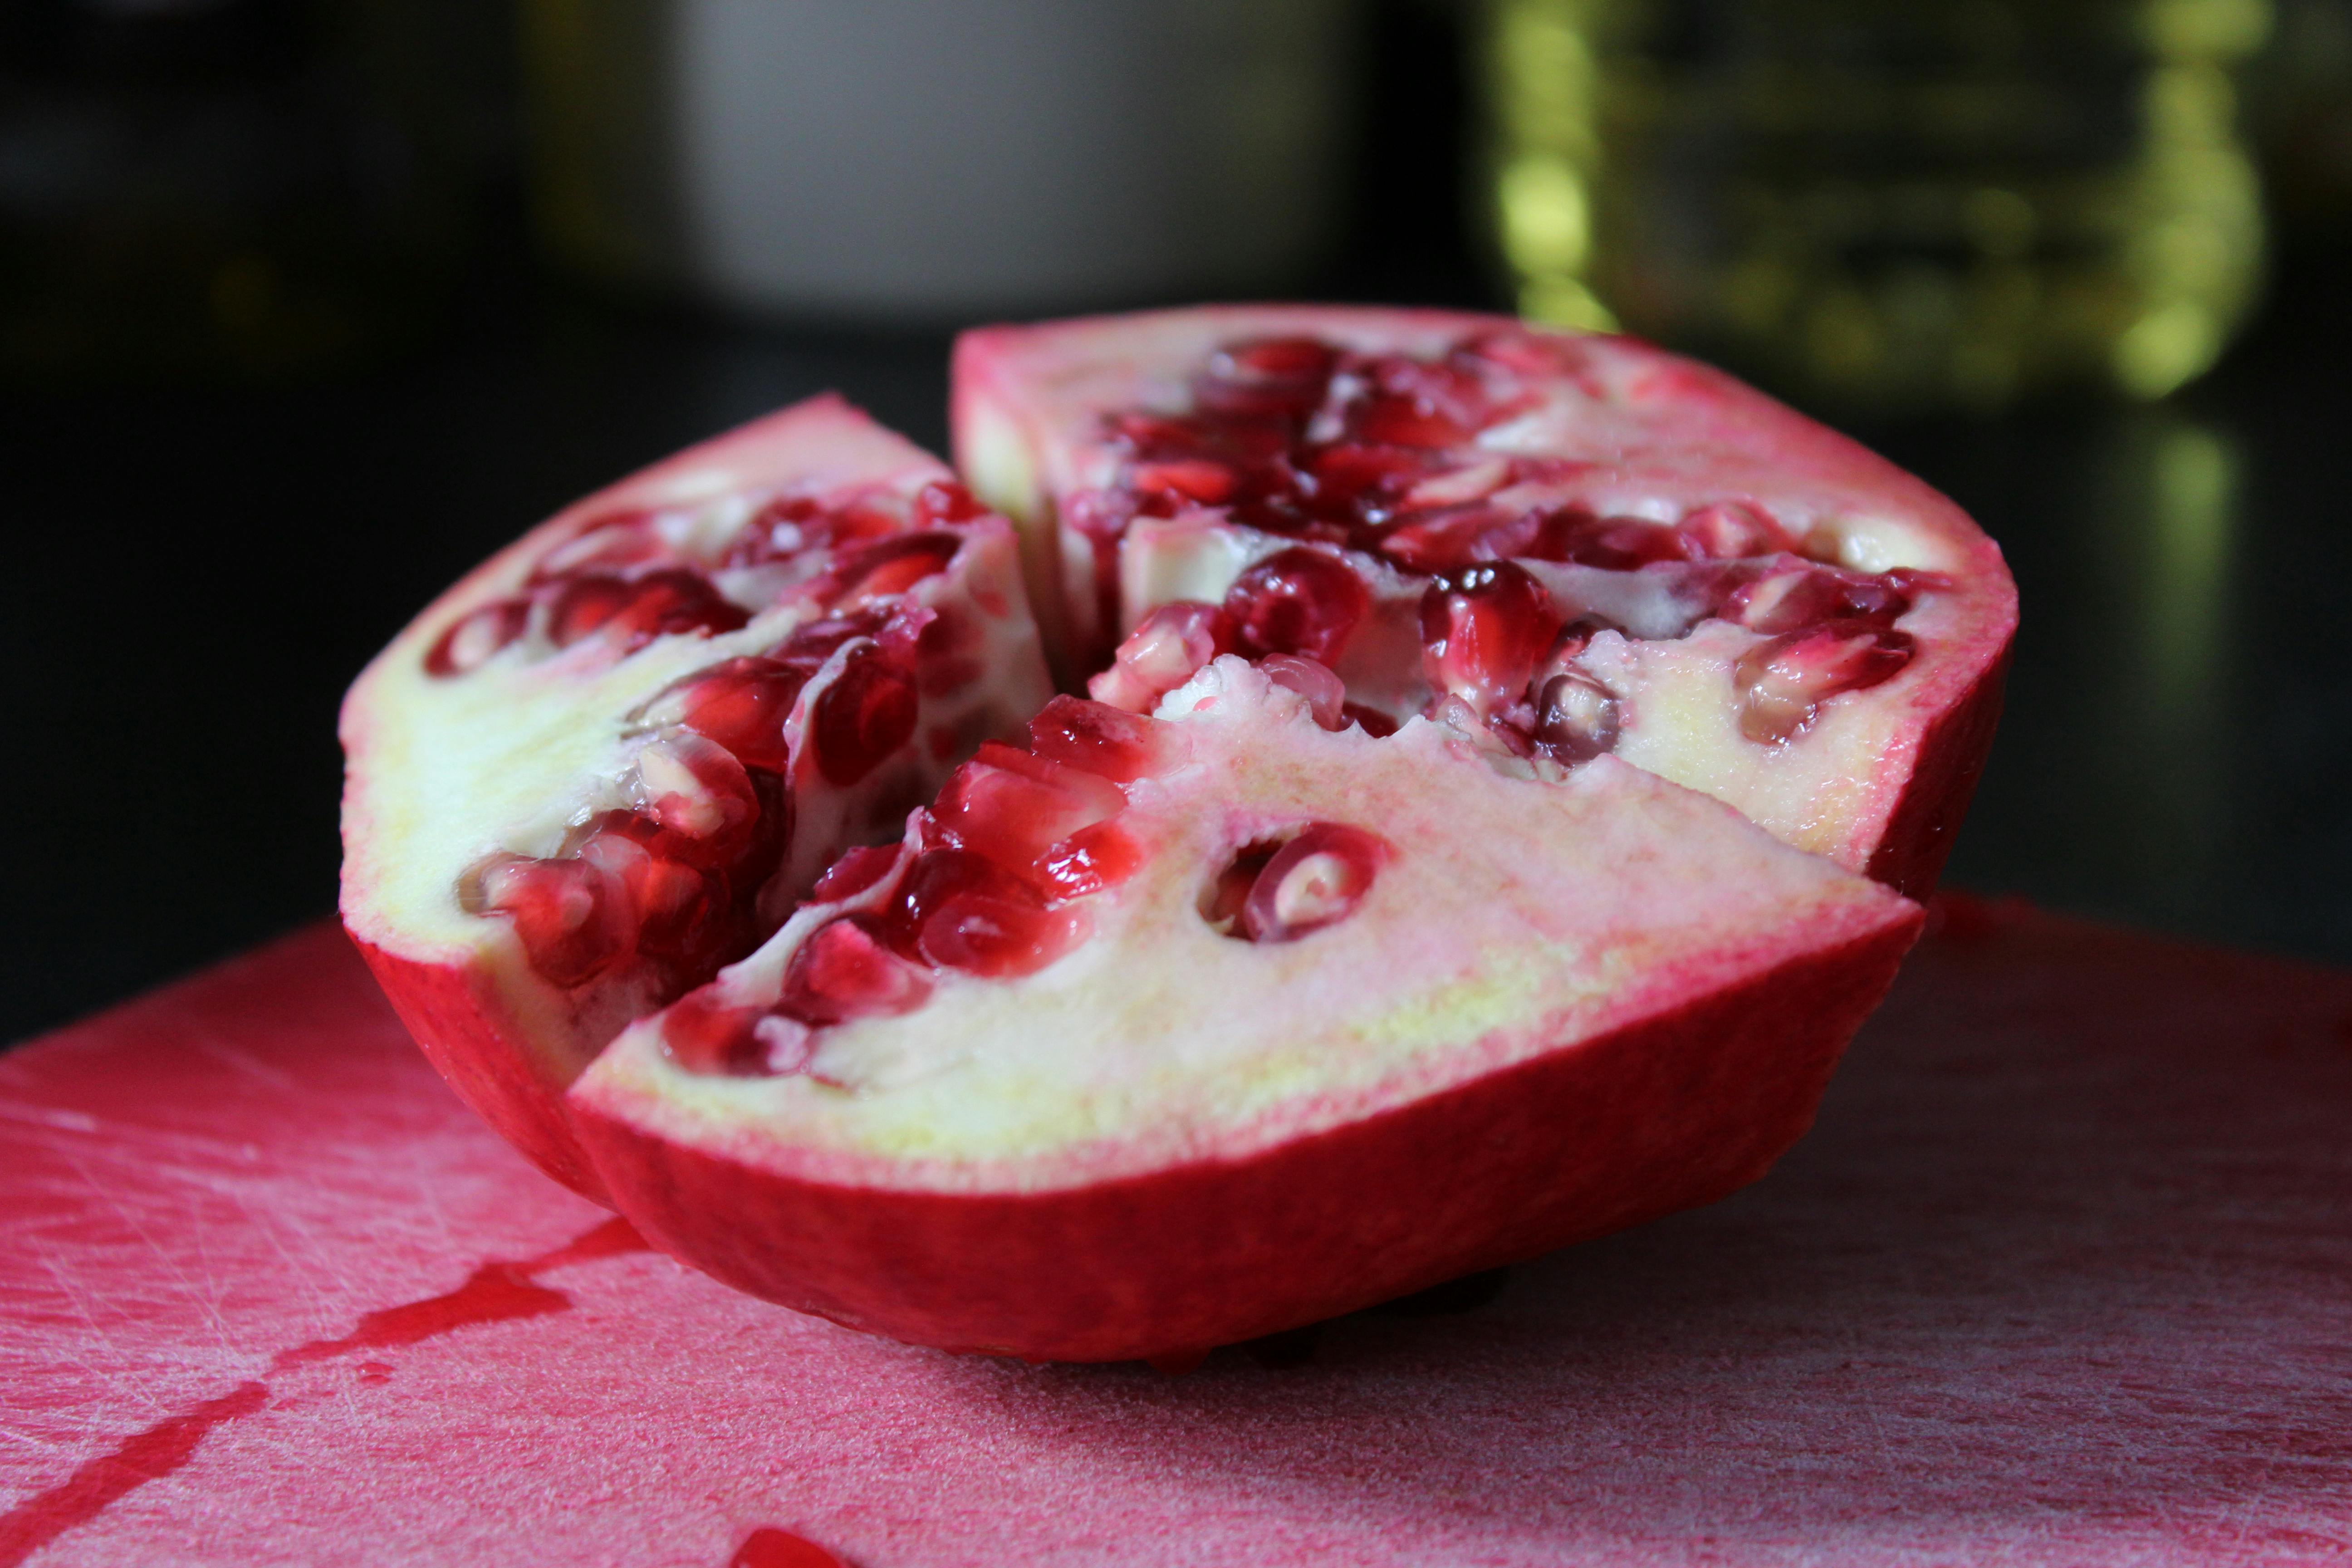 Kostenloses Foto zum Thema: essen, frucht, granatapfel